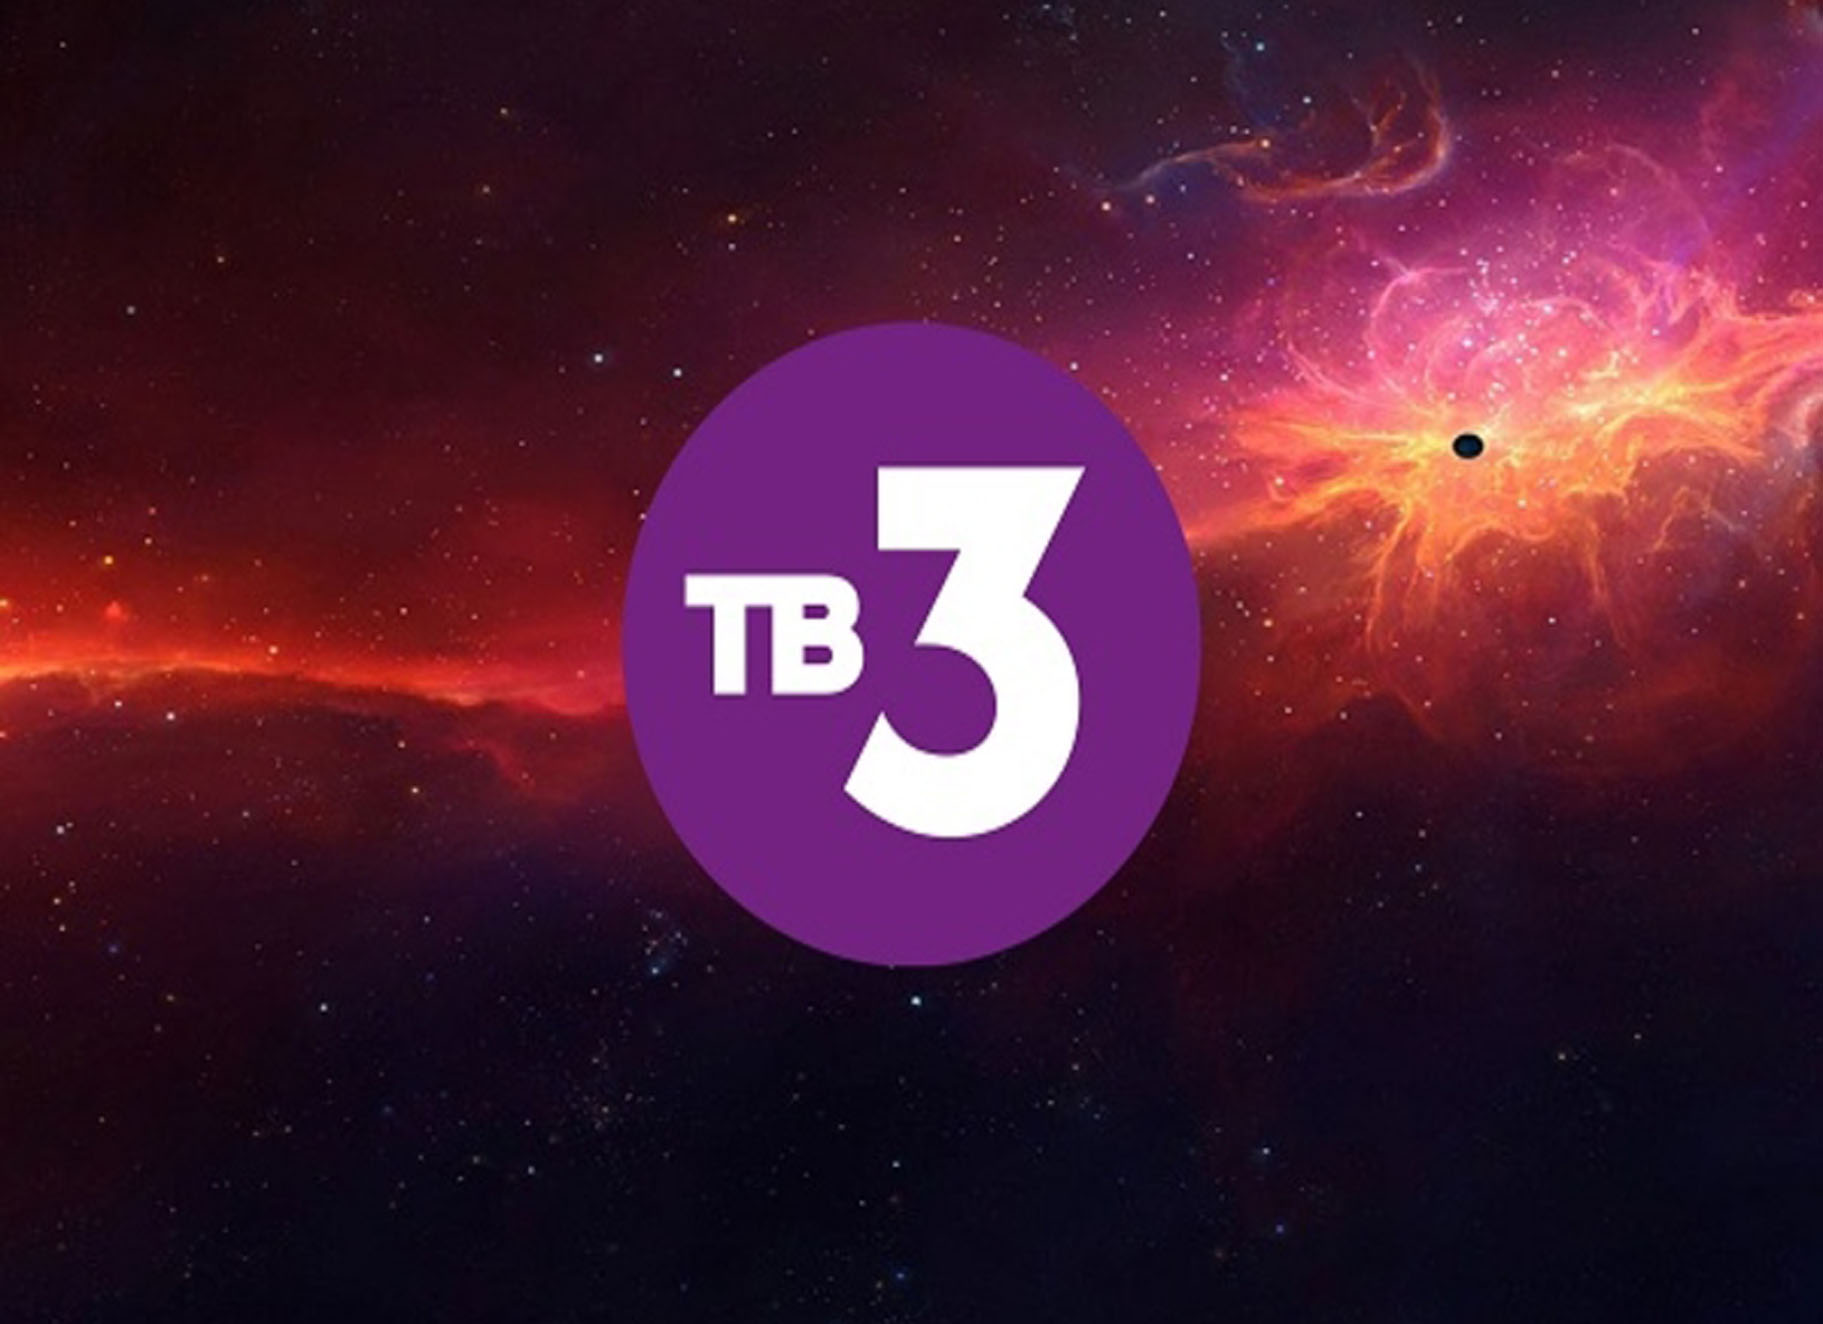 Прямая трансляция 3 канал. Телеканал тв3. Тв3 логотип. Логотип канала тв3. ТВ 3 эмблема.